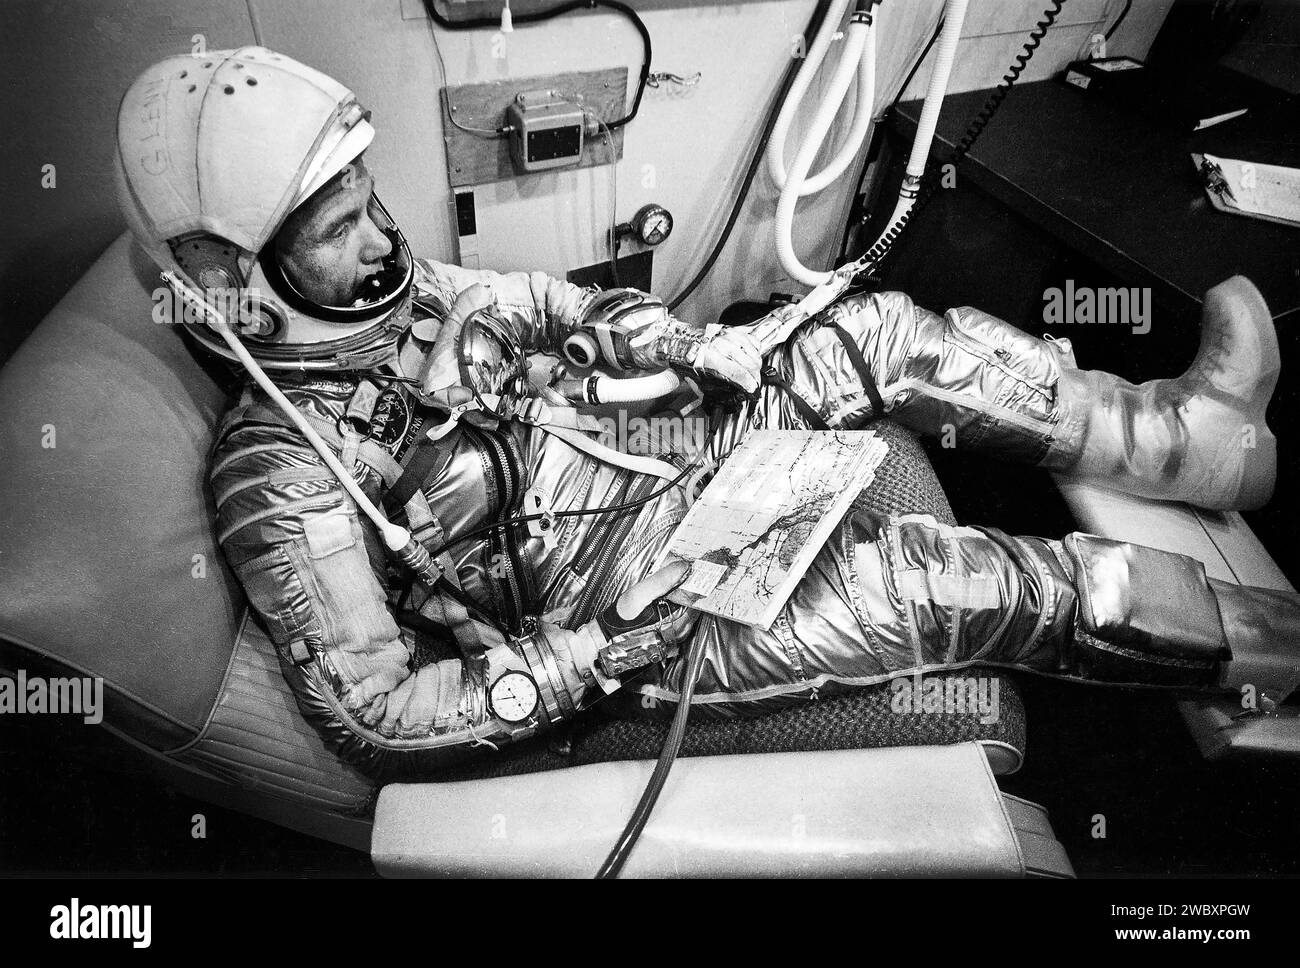 Combinaison de vol de l'astronaute américain John Glenn avant le lancement de ma-6, Cape Canaveral, Floride, États-Unis, NASA, 20 février 1962 Banque D'Images